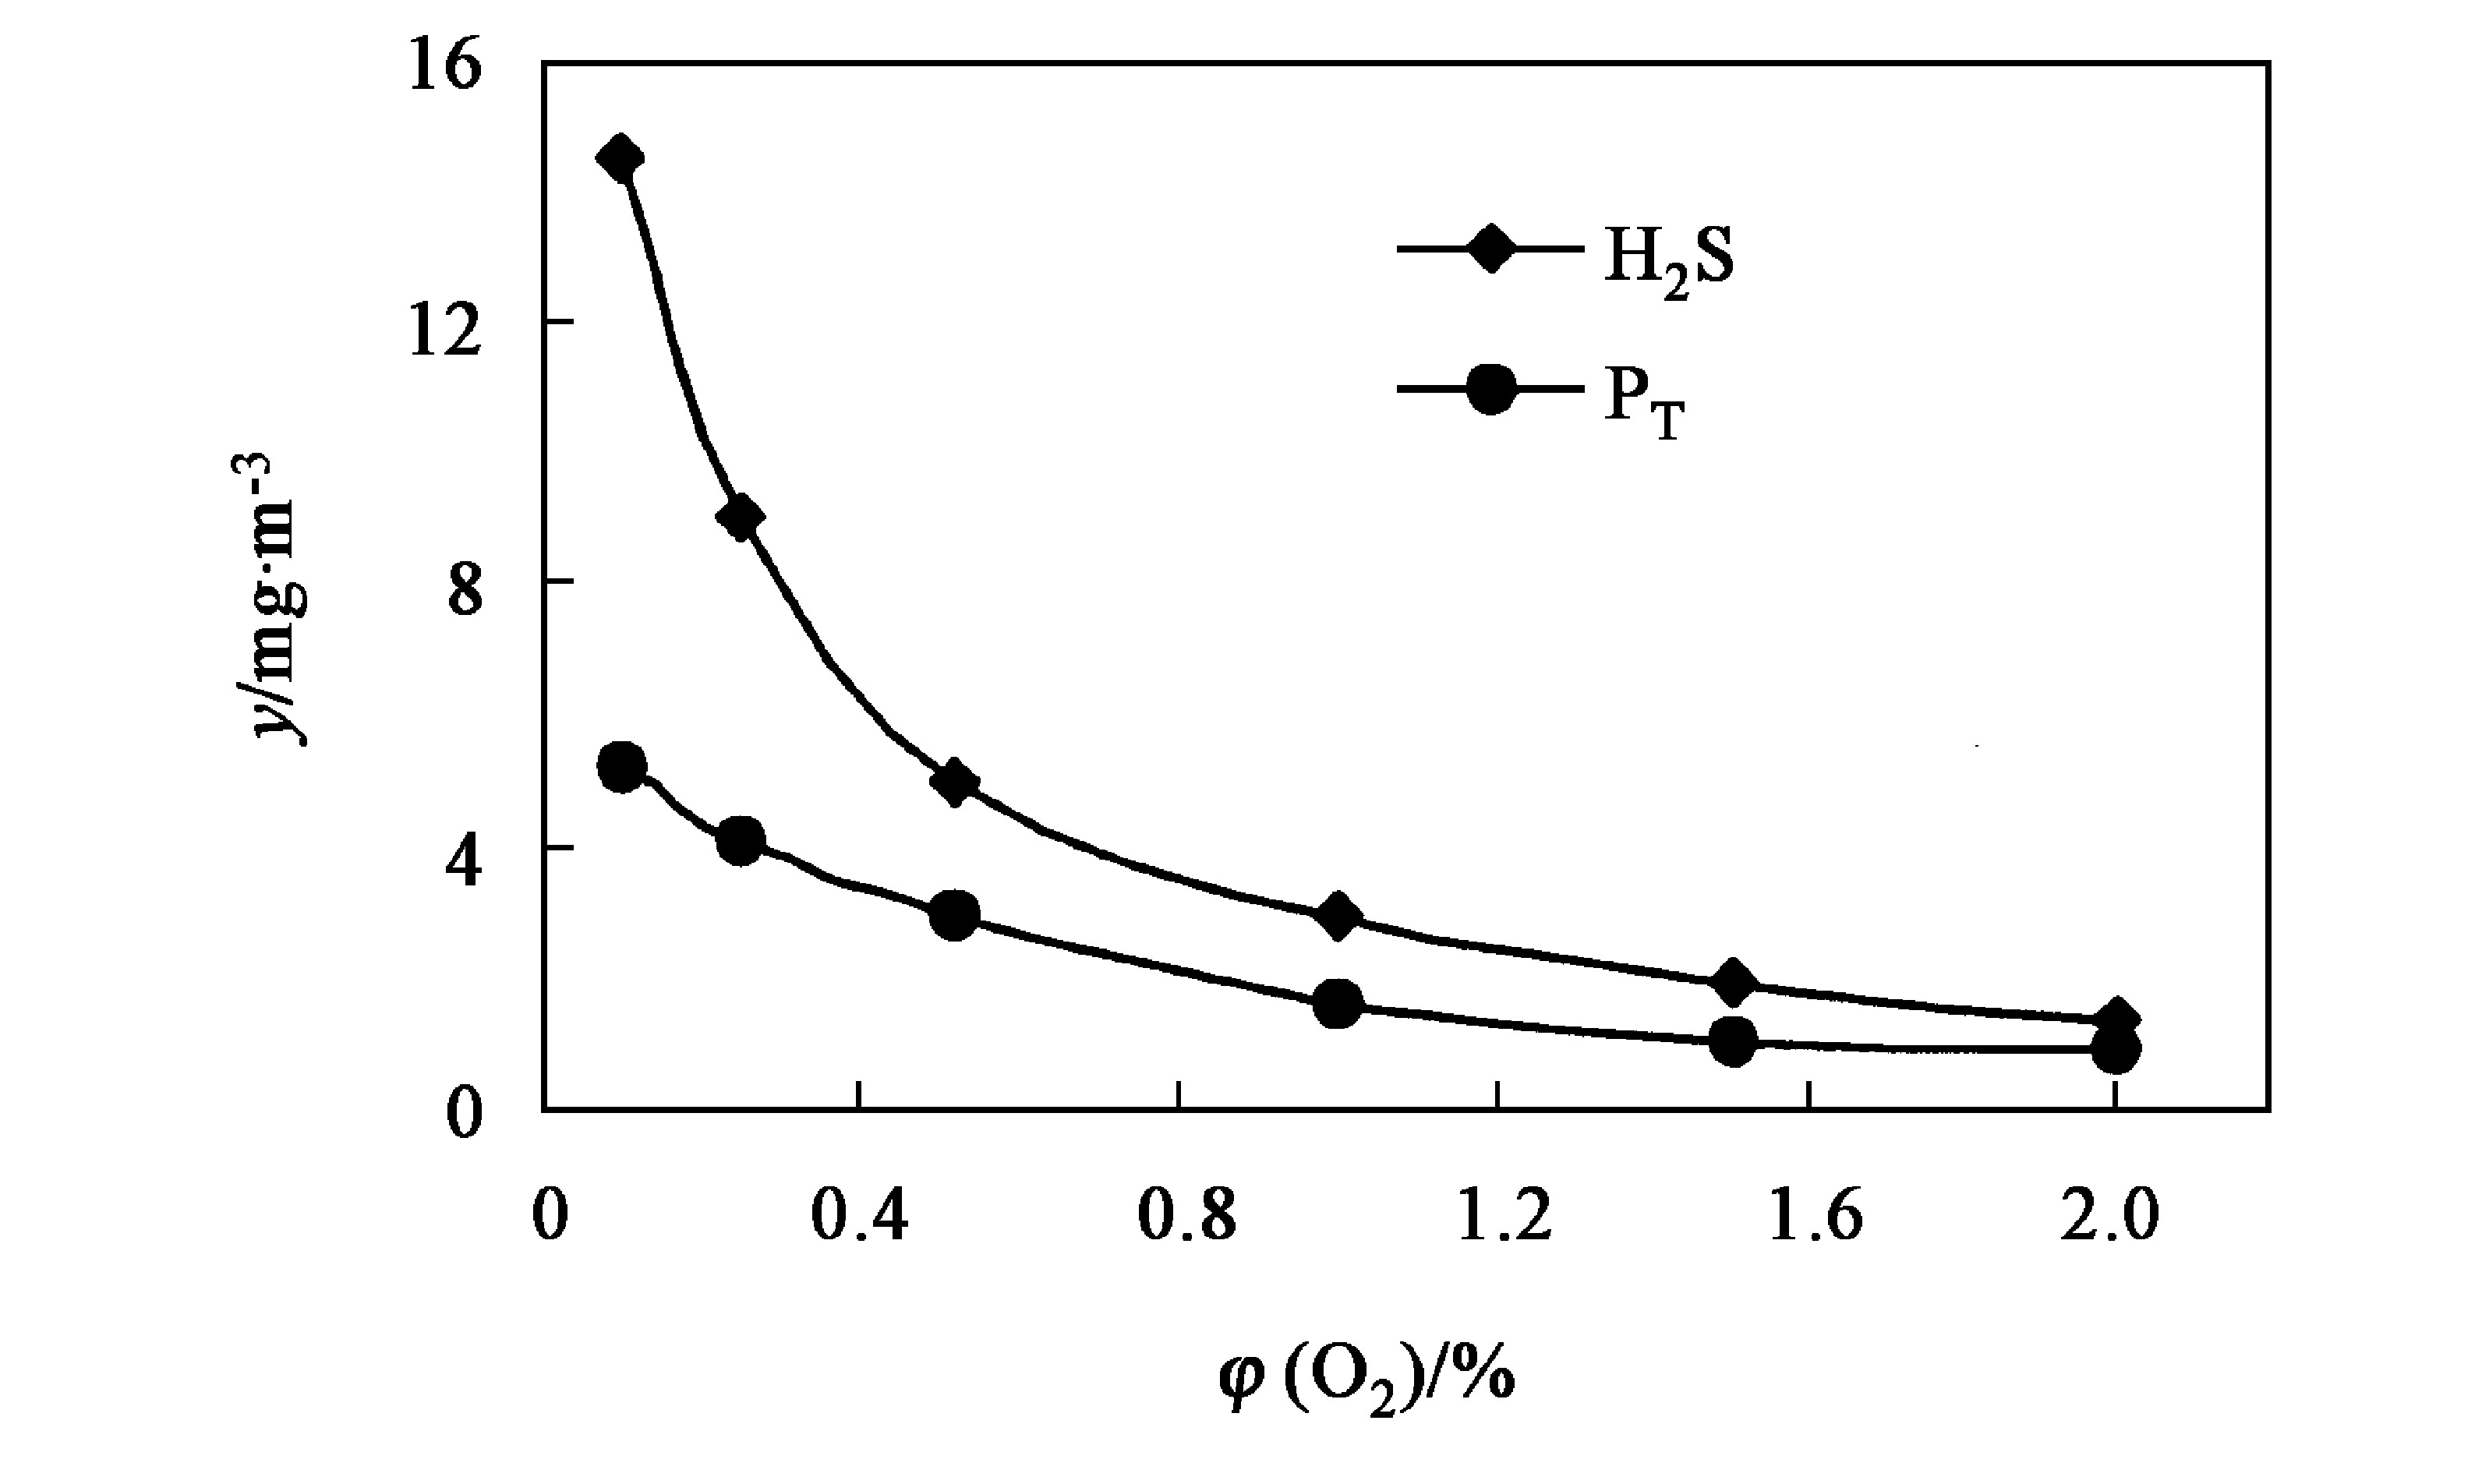 图11 OAC吸附固定床浓度对H2S和总磷出口
浓度的影响 (80 ℃, 载气流量:68 m3/h, t=16 h)